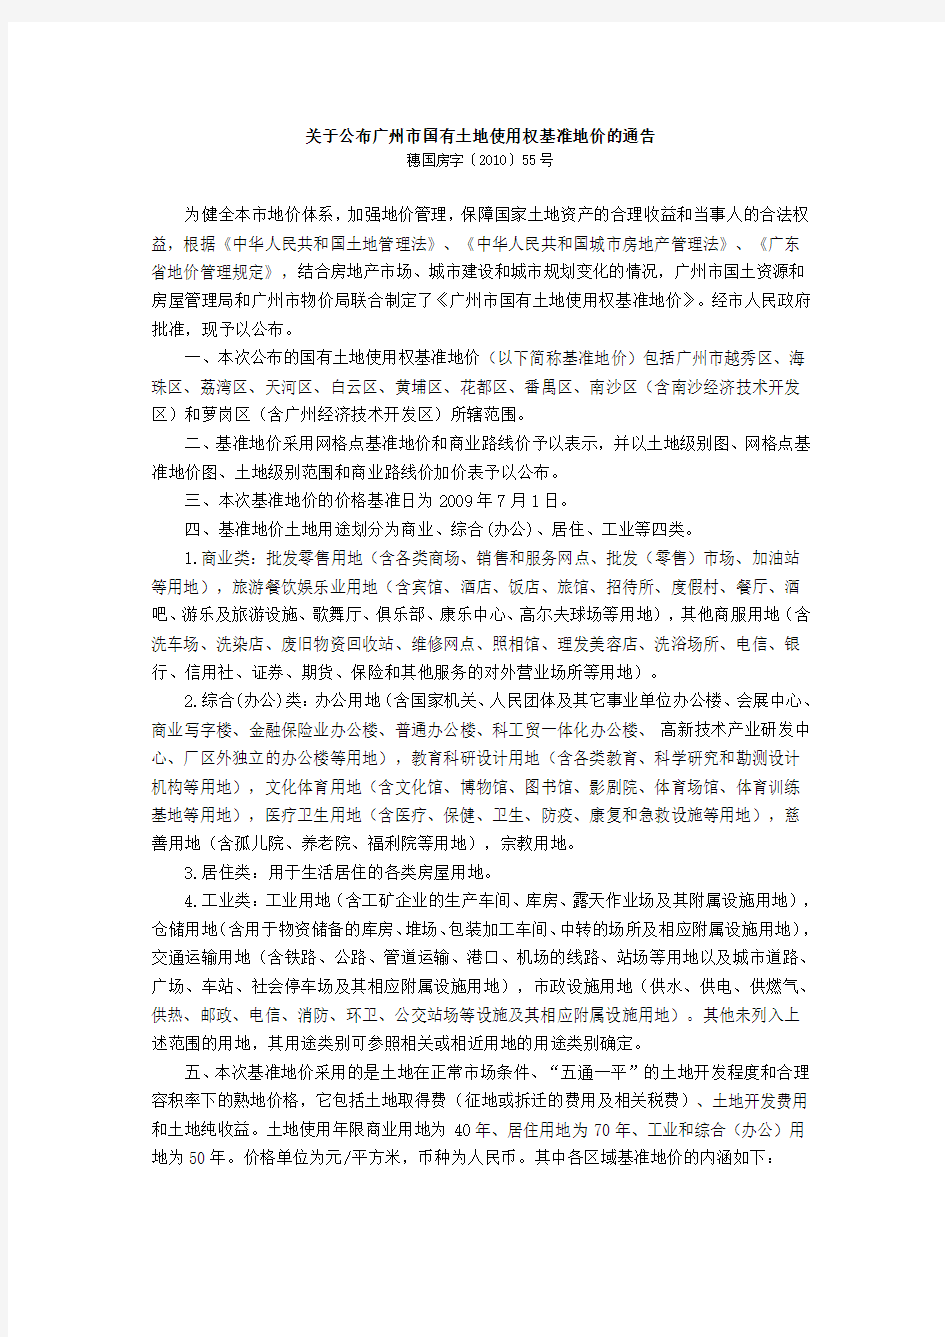 关于公布广州市国有土地使用权基准地价的通告(穗国房字〔2010〕55号)